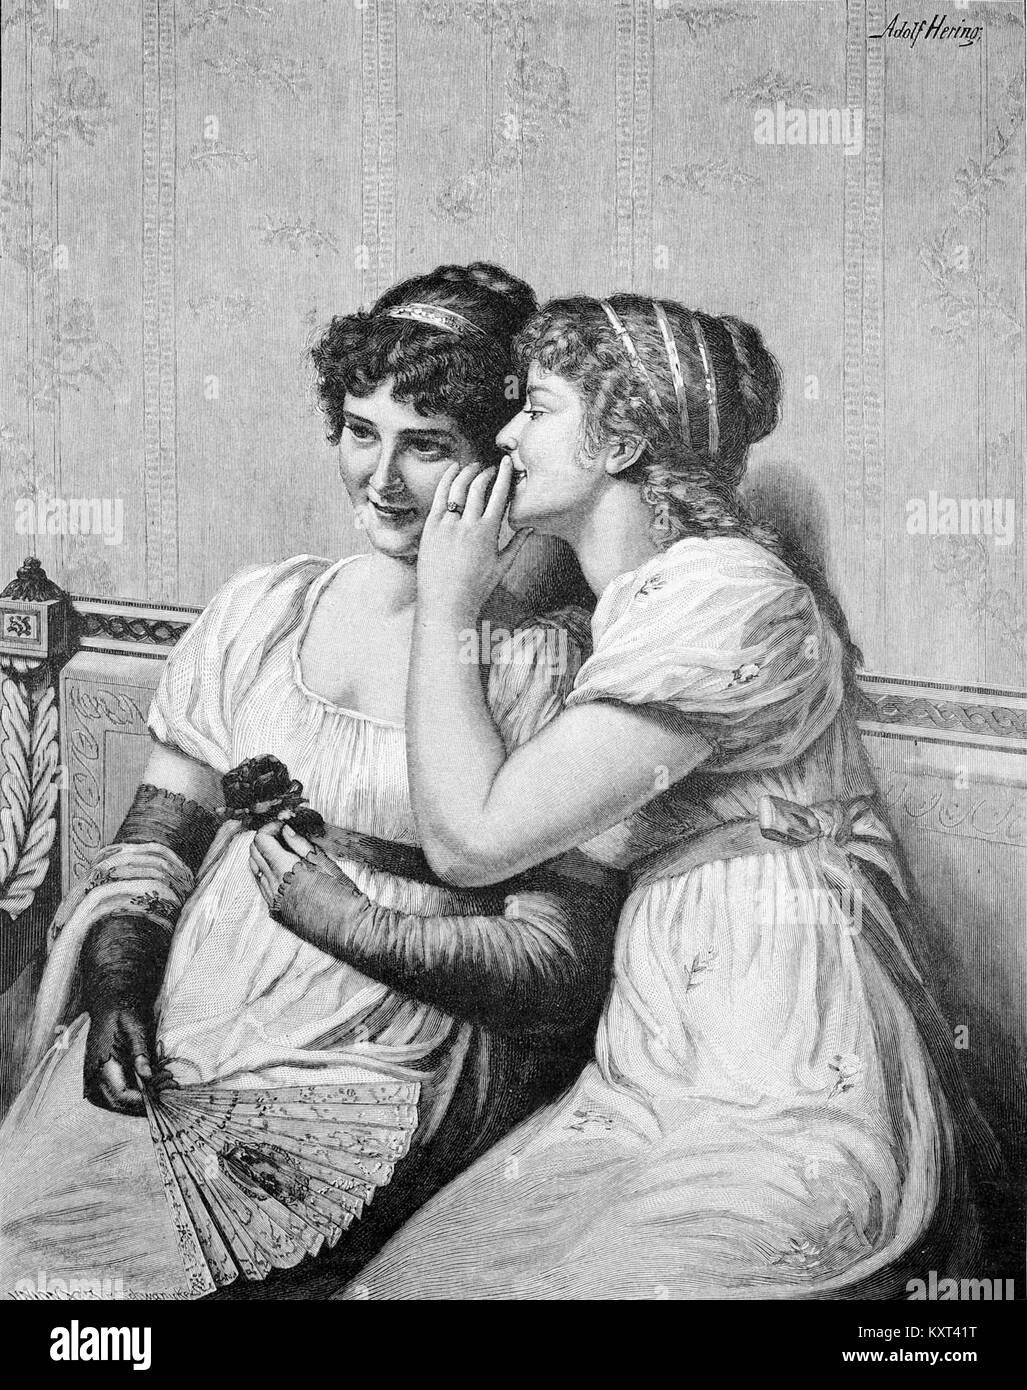 Ein süßes Geheimnis von Adolf Hering, 1892 Stock Photo